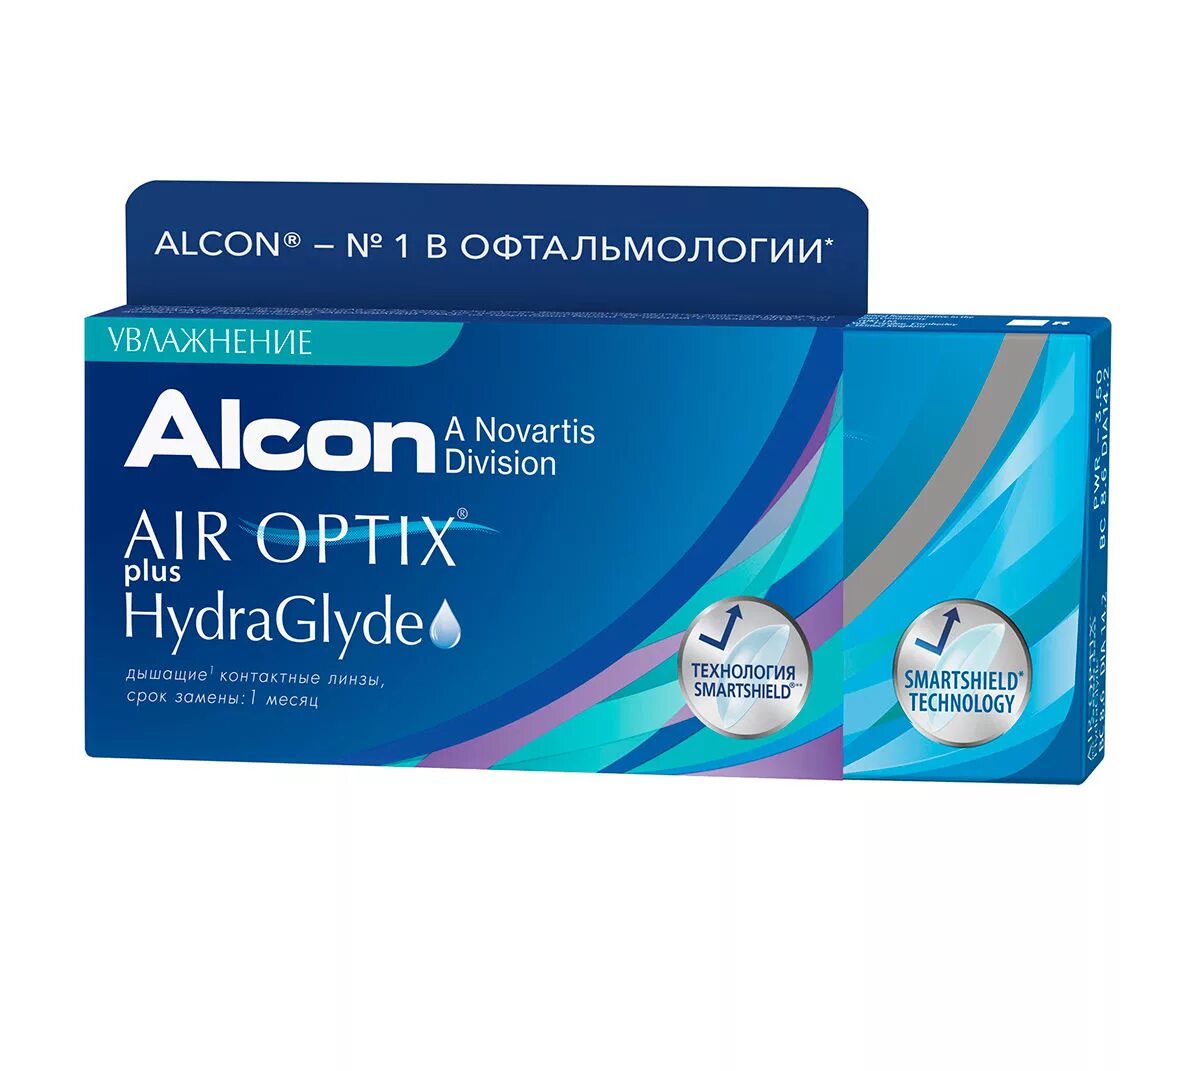 Alcon. Air Optix (Alcon) Aqua (6 линз). Air Optix (Alcon) Plus HYDRAGLYDE (6 линз). Air Optix Plus HYDRAGLYDE 3 линзы. Air Optix (Alcon) Aqua (3 линзы).